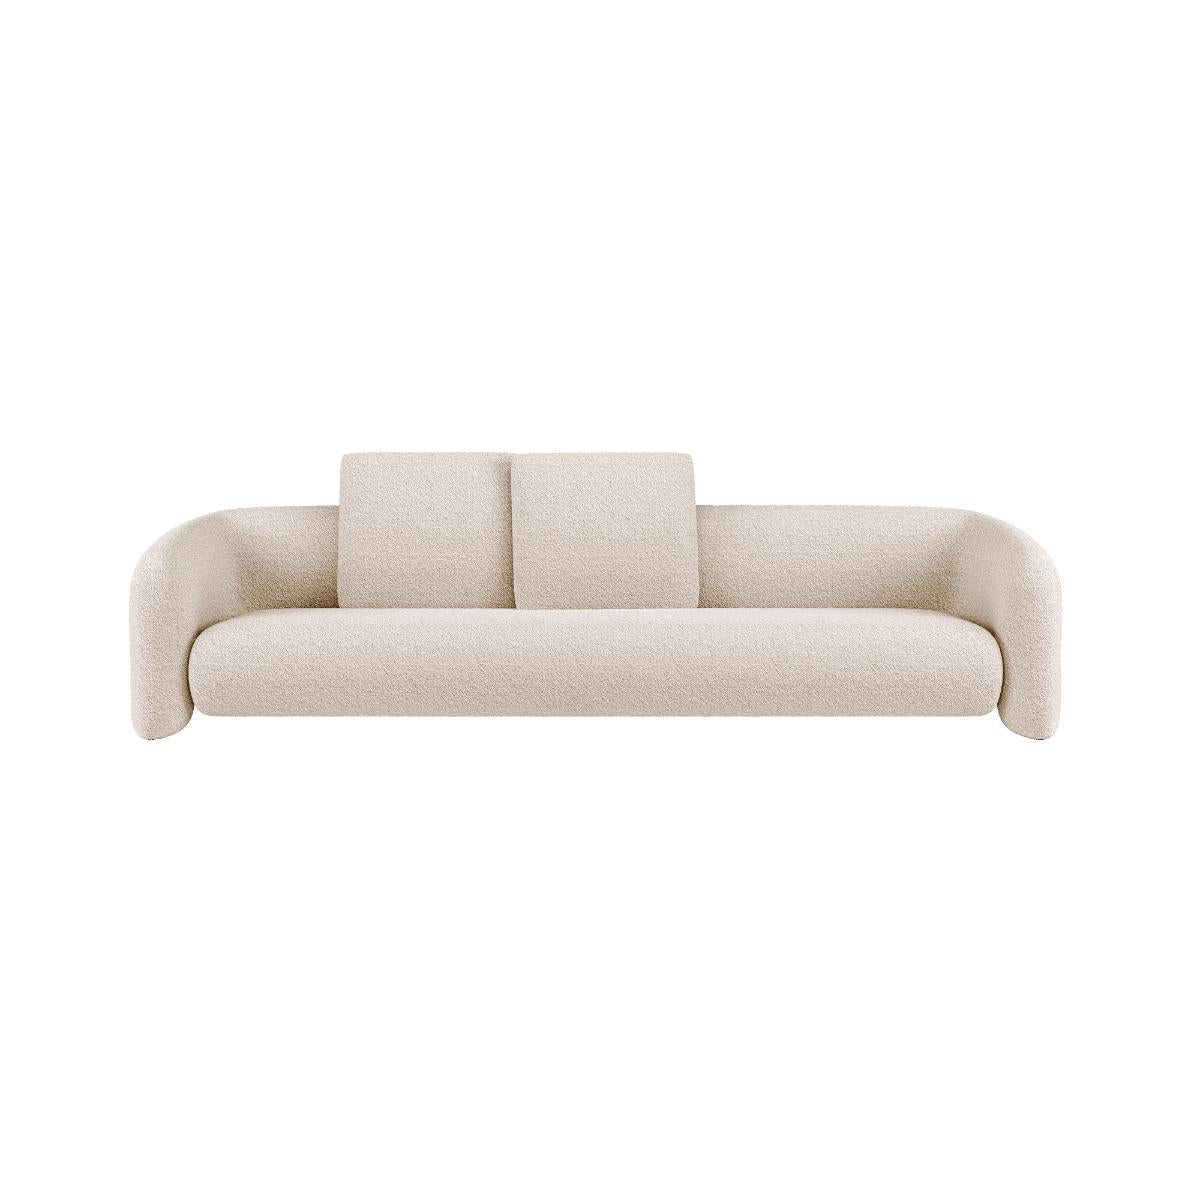 Bold Sofa von Mohdern
Abmessungen: B 268 x T 102 x H 76 cm
MATERIALIEN: Stoff, Bouclé


Bold ist eine raffinierte Möbelkollektion, die von der Marke Mohdern entworfen und produziert wird. Die Serie umfasst den Sessel und den Loungesessel; das Sofa